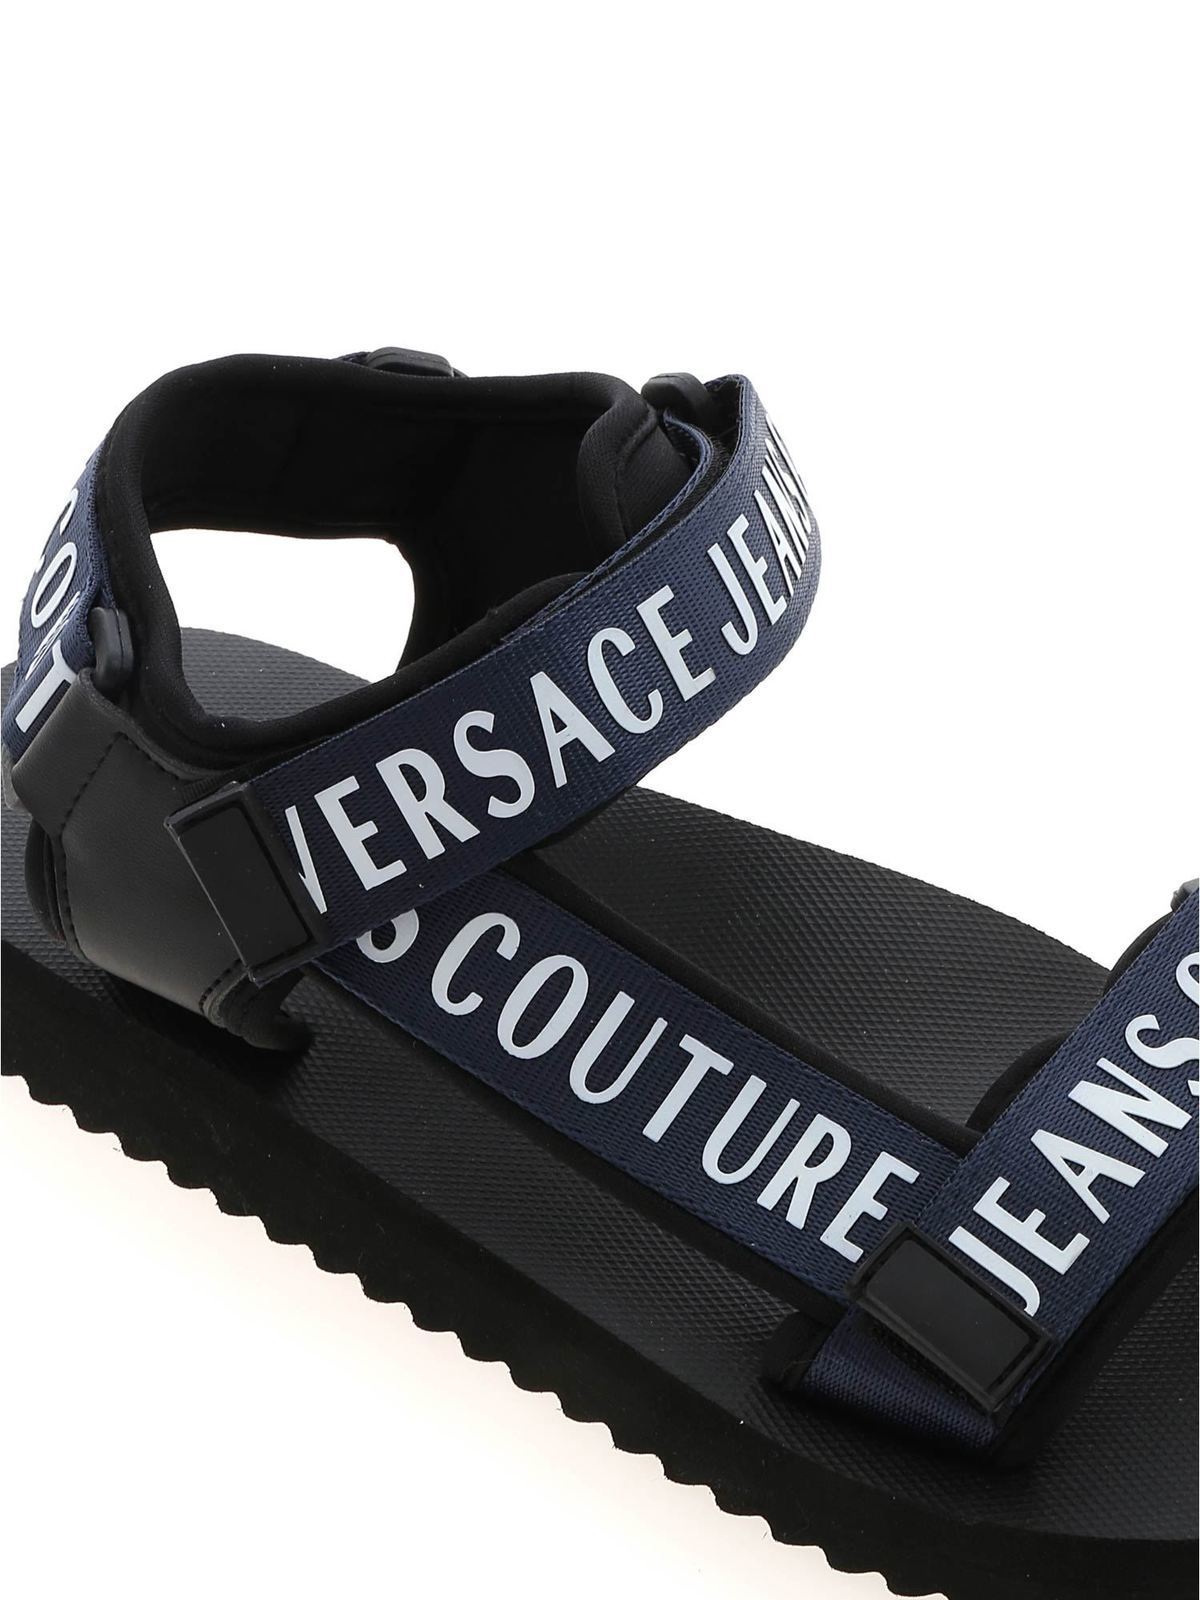 versace jeans online shop